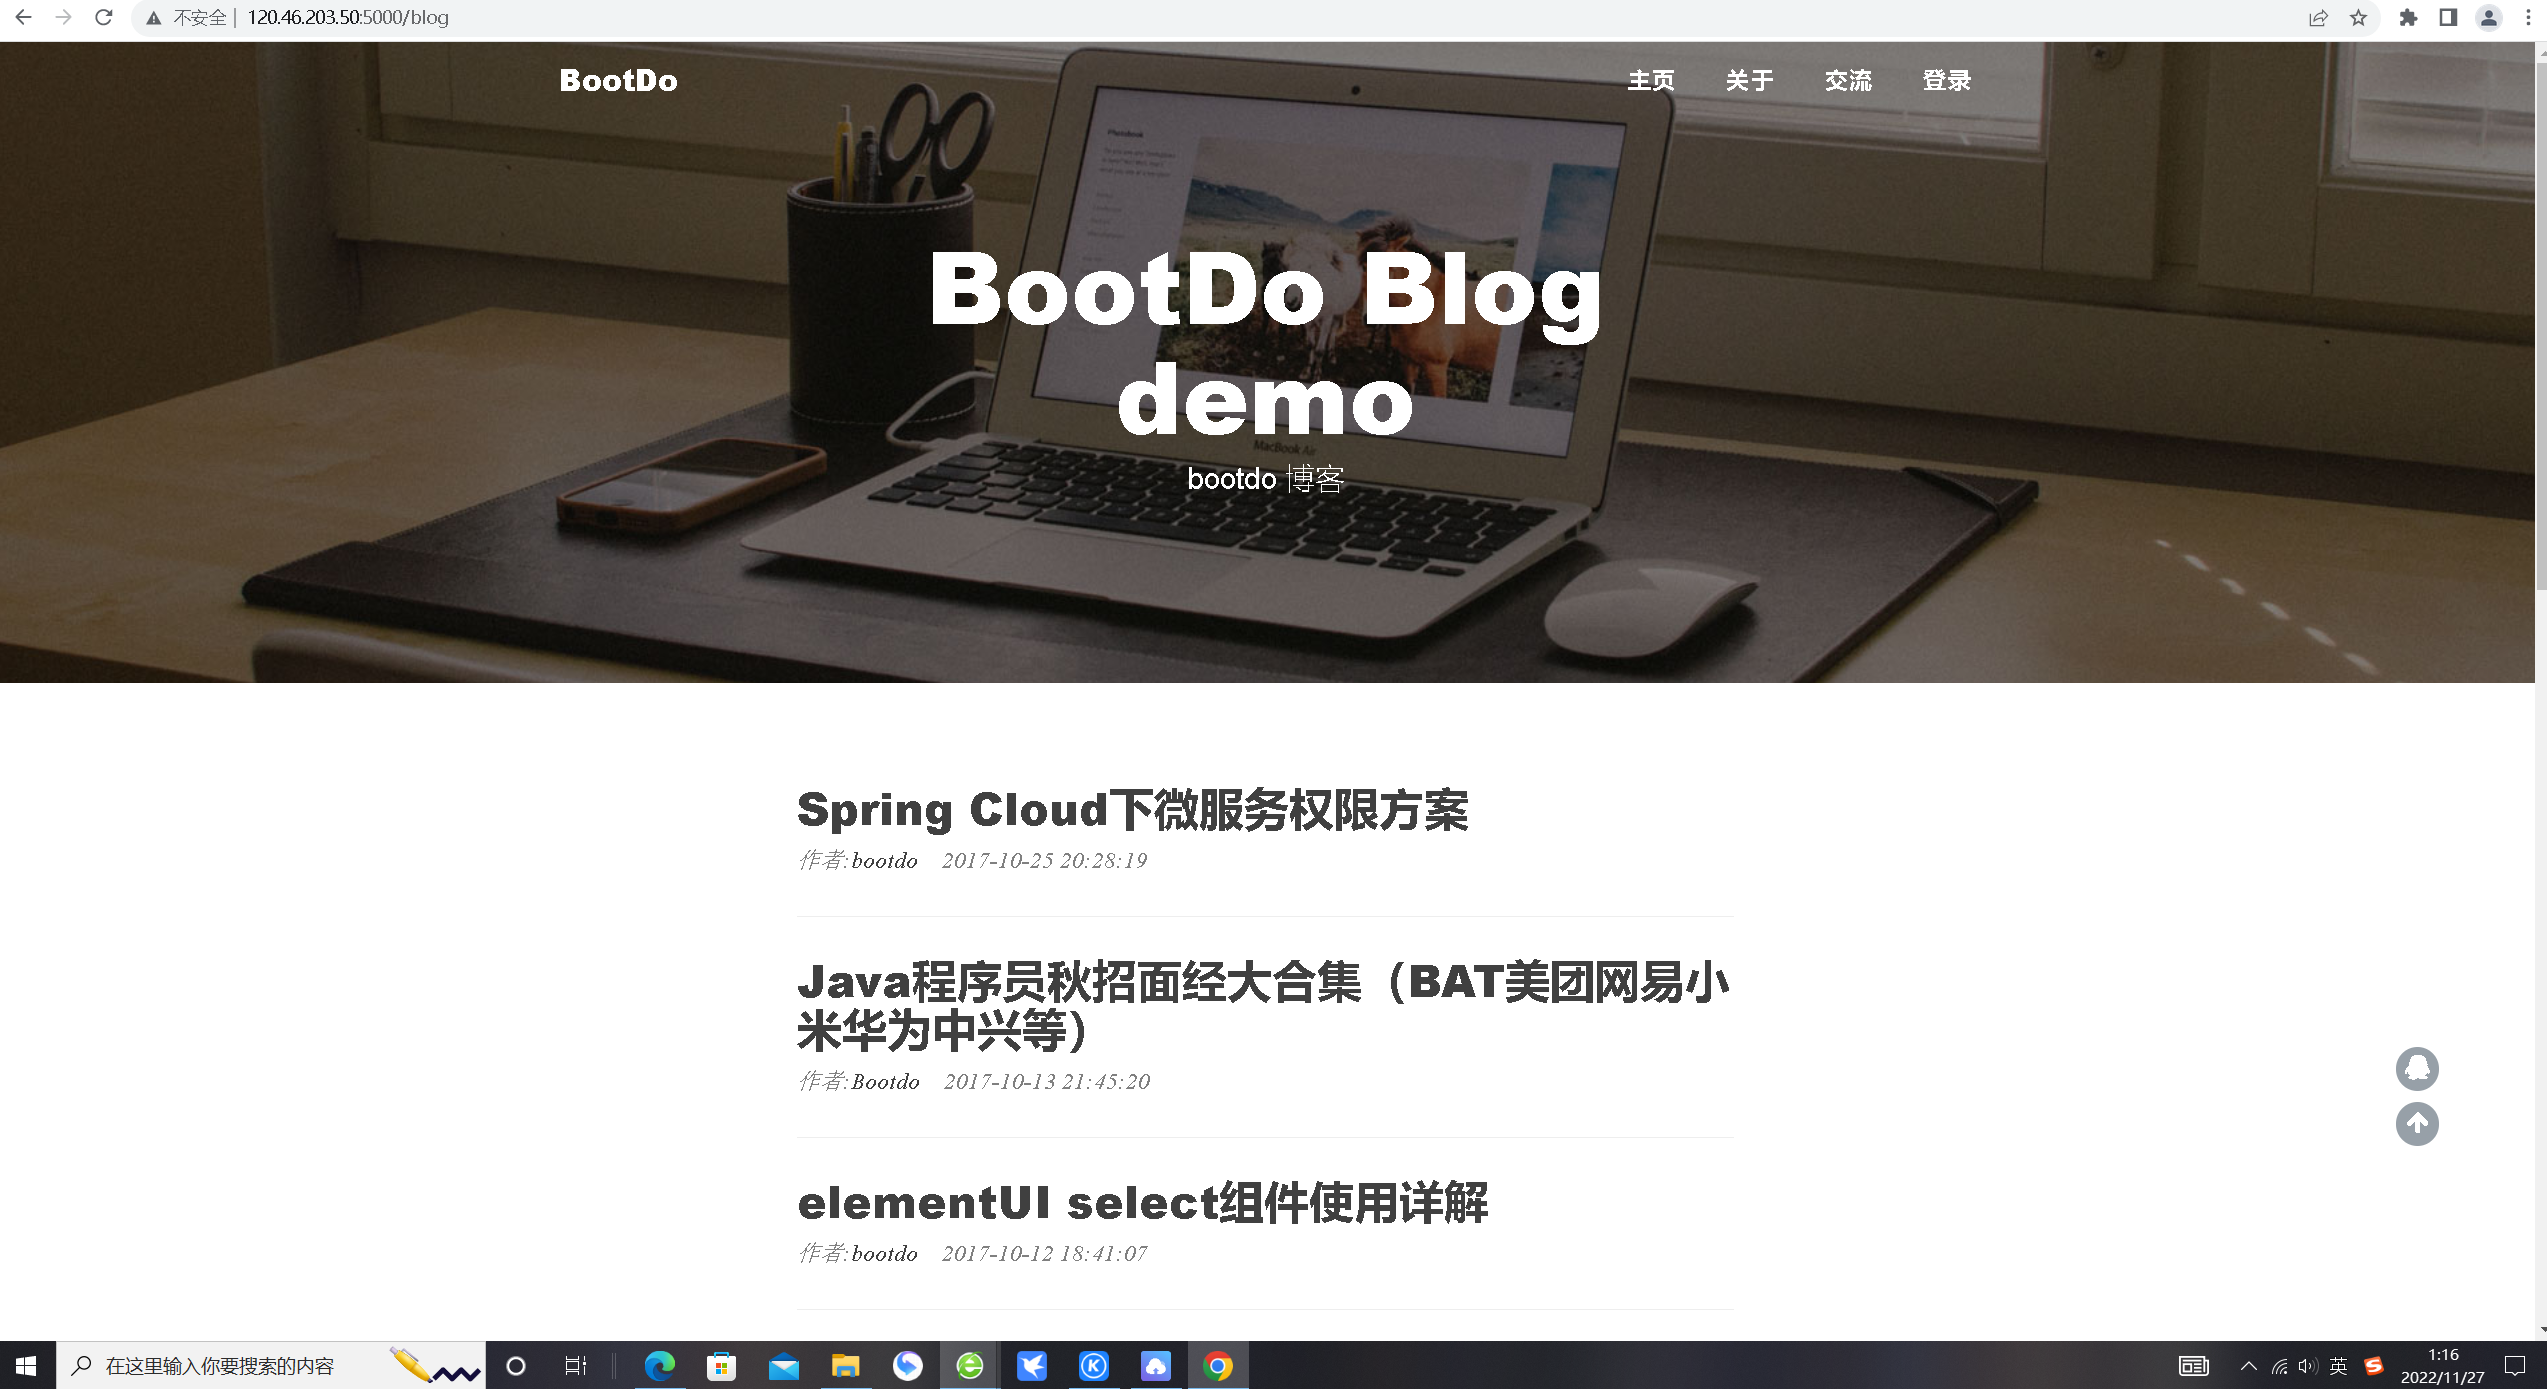 华为云DevCloud平台部署bootdo博客论坛实战【开发者专属集市】